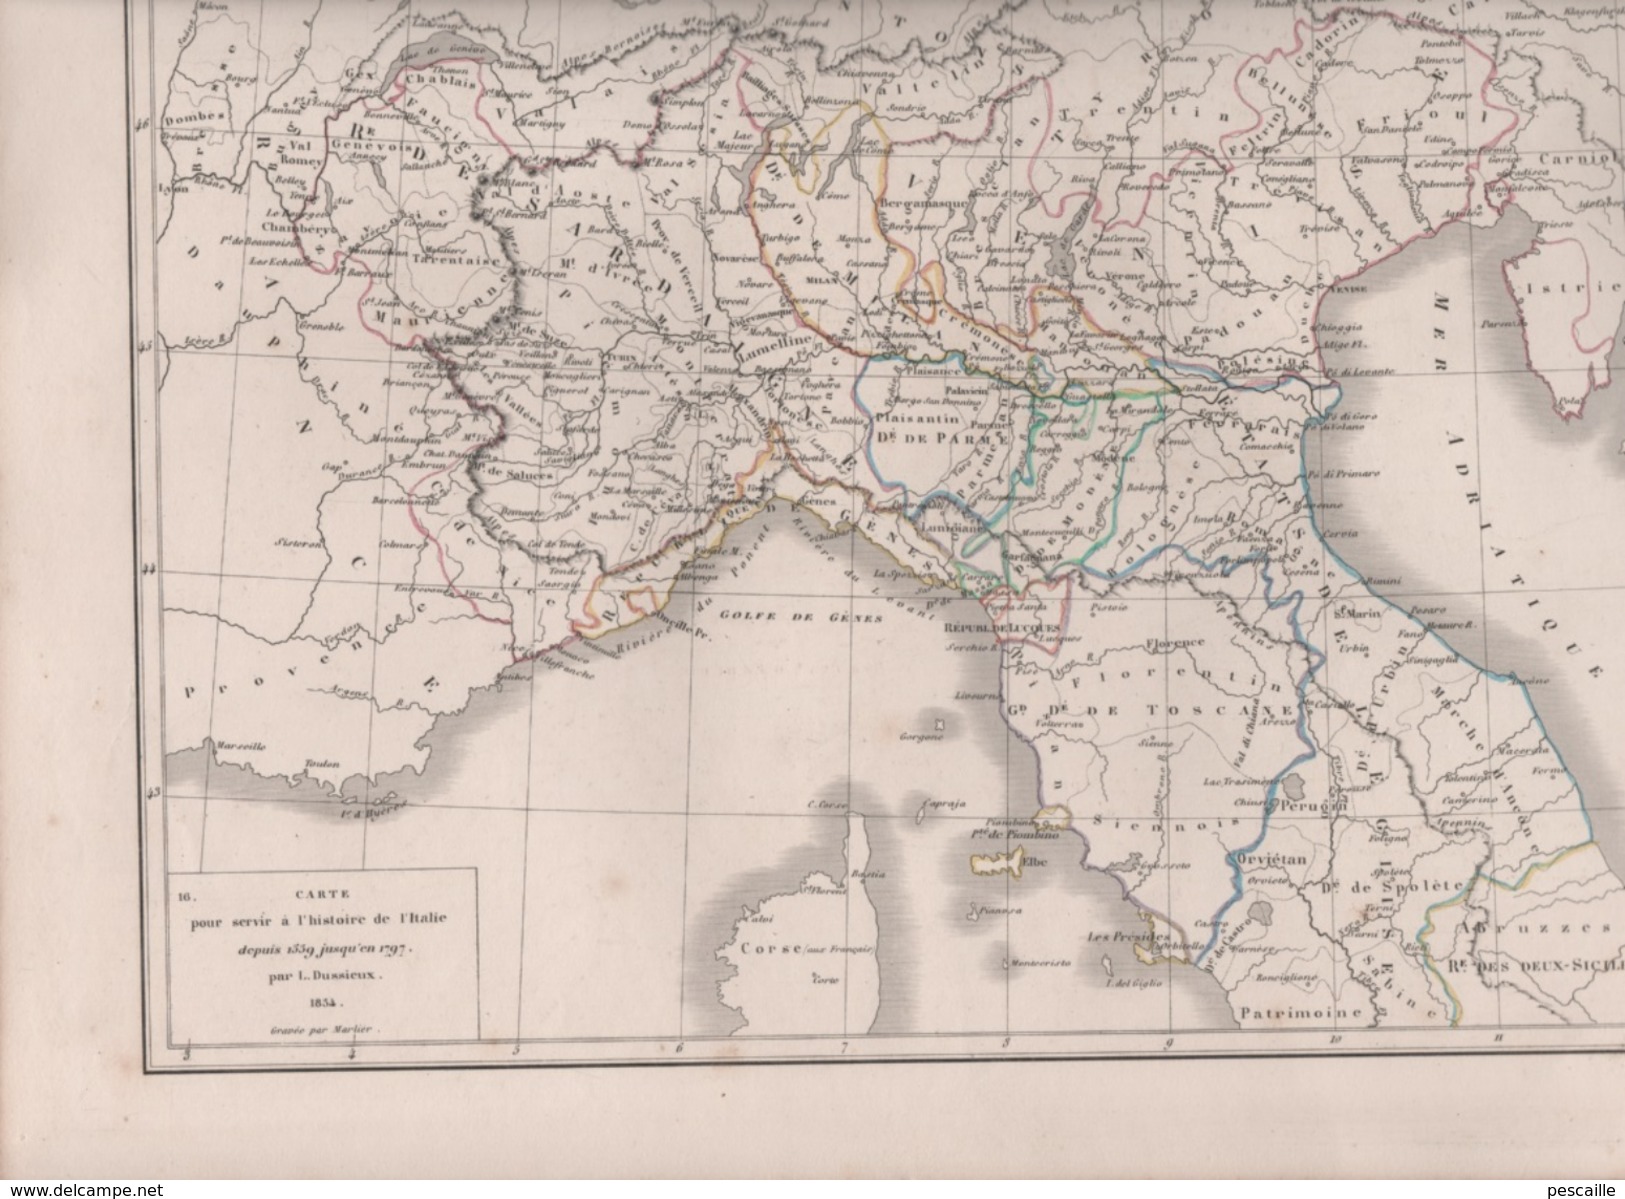 CARTES POUR SERVIR HISTOIRE DE L'ITALIE DE 1559 à 1797 / DEPUIS TRAITE DE CAMPO FORMIO 1797 AU TRAITE DE LUNEVILLE 1801 - Carte Geographique